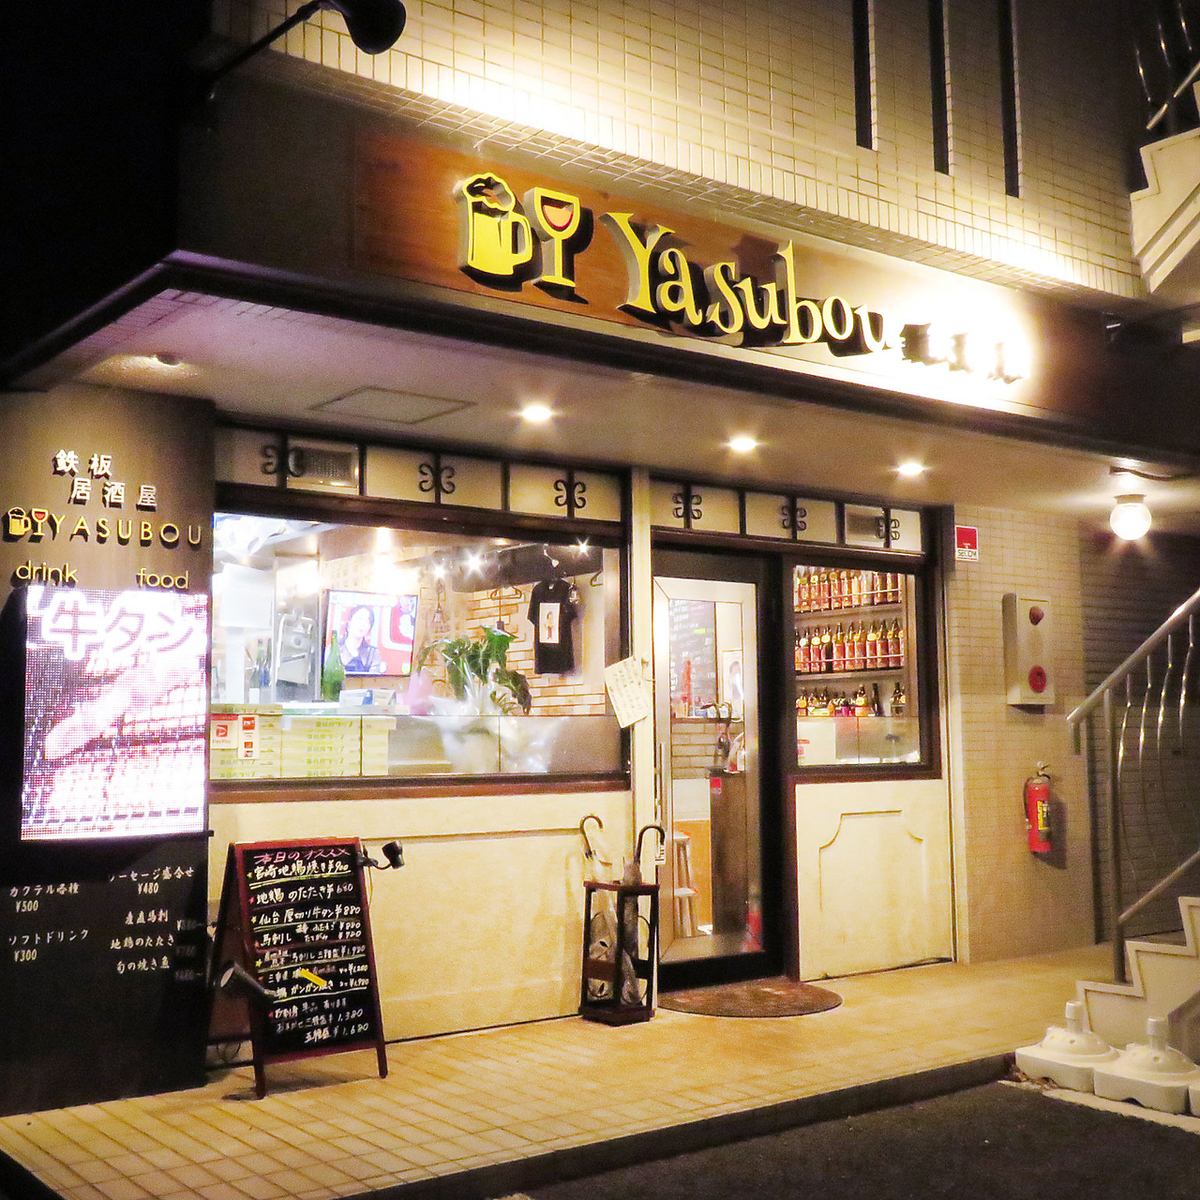 从车站步行15分钟！参观铁板烧居酒屋Yasubou，在那里您可以以实惠的价格享用正宗的铁板烧